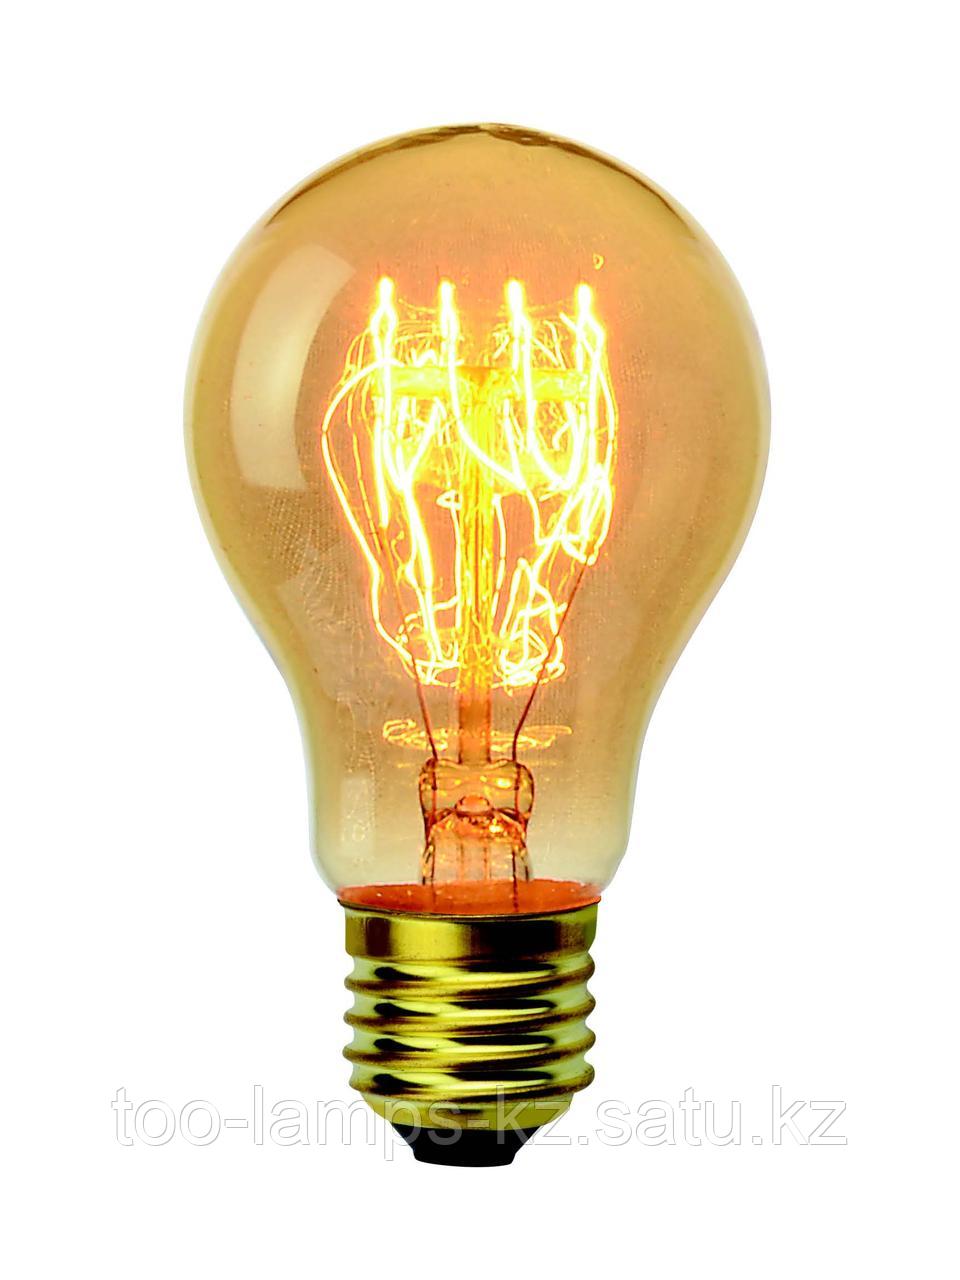 Светодиодная филаментная ретро лампа Эдисона DECOART мощностью 40W